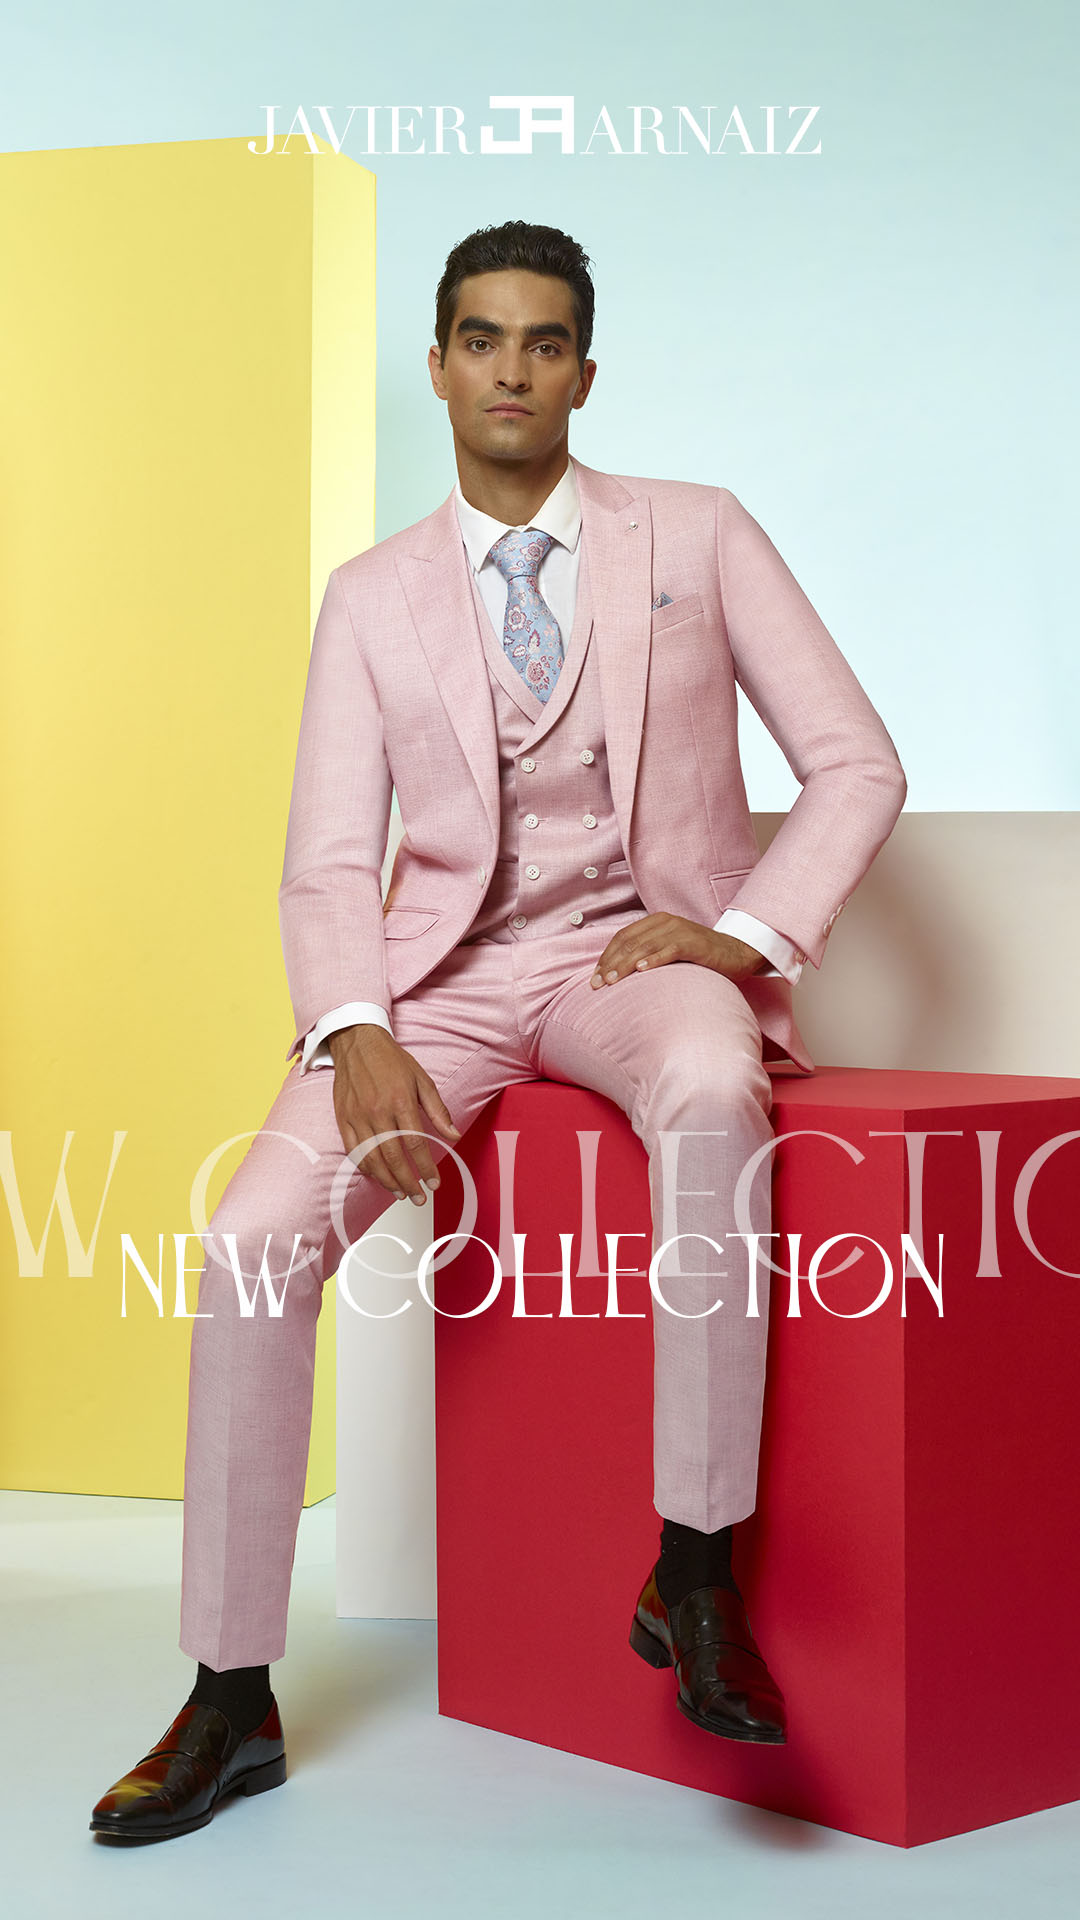 Traje de novio en color rosa con chaleco al tono del traje.